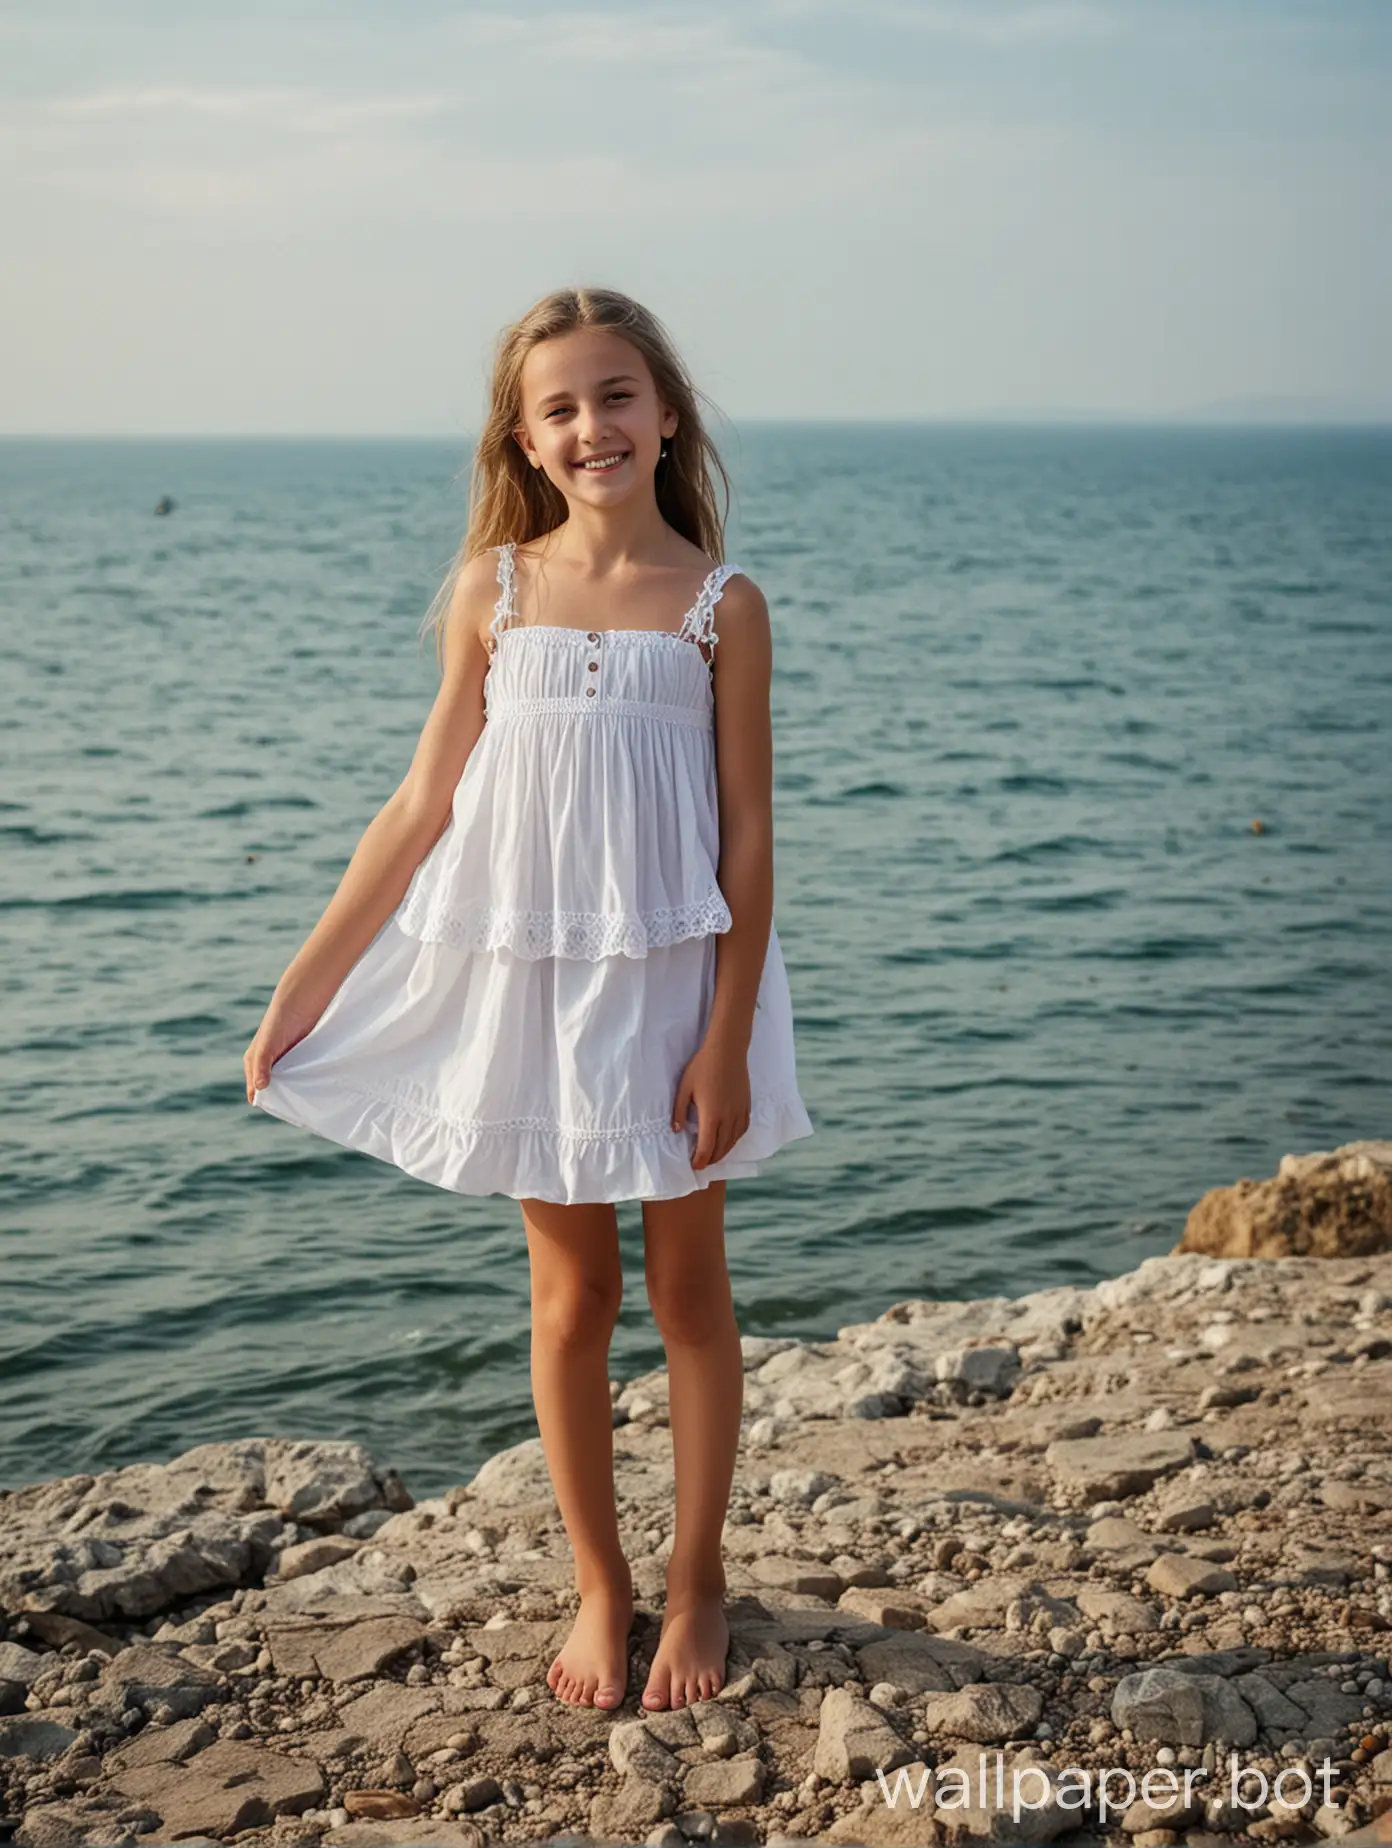 Crimea, sea view, 11-year-old girl, full height, smile, light short dress